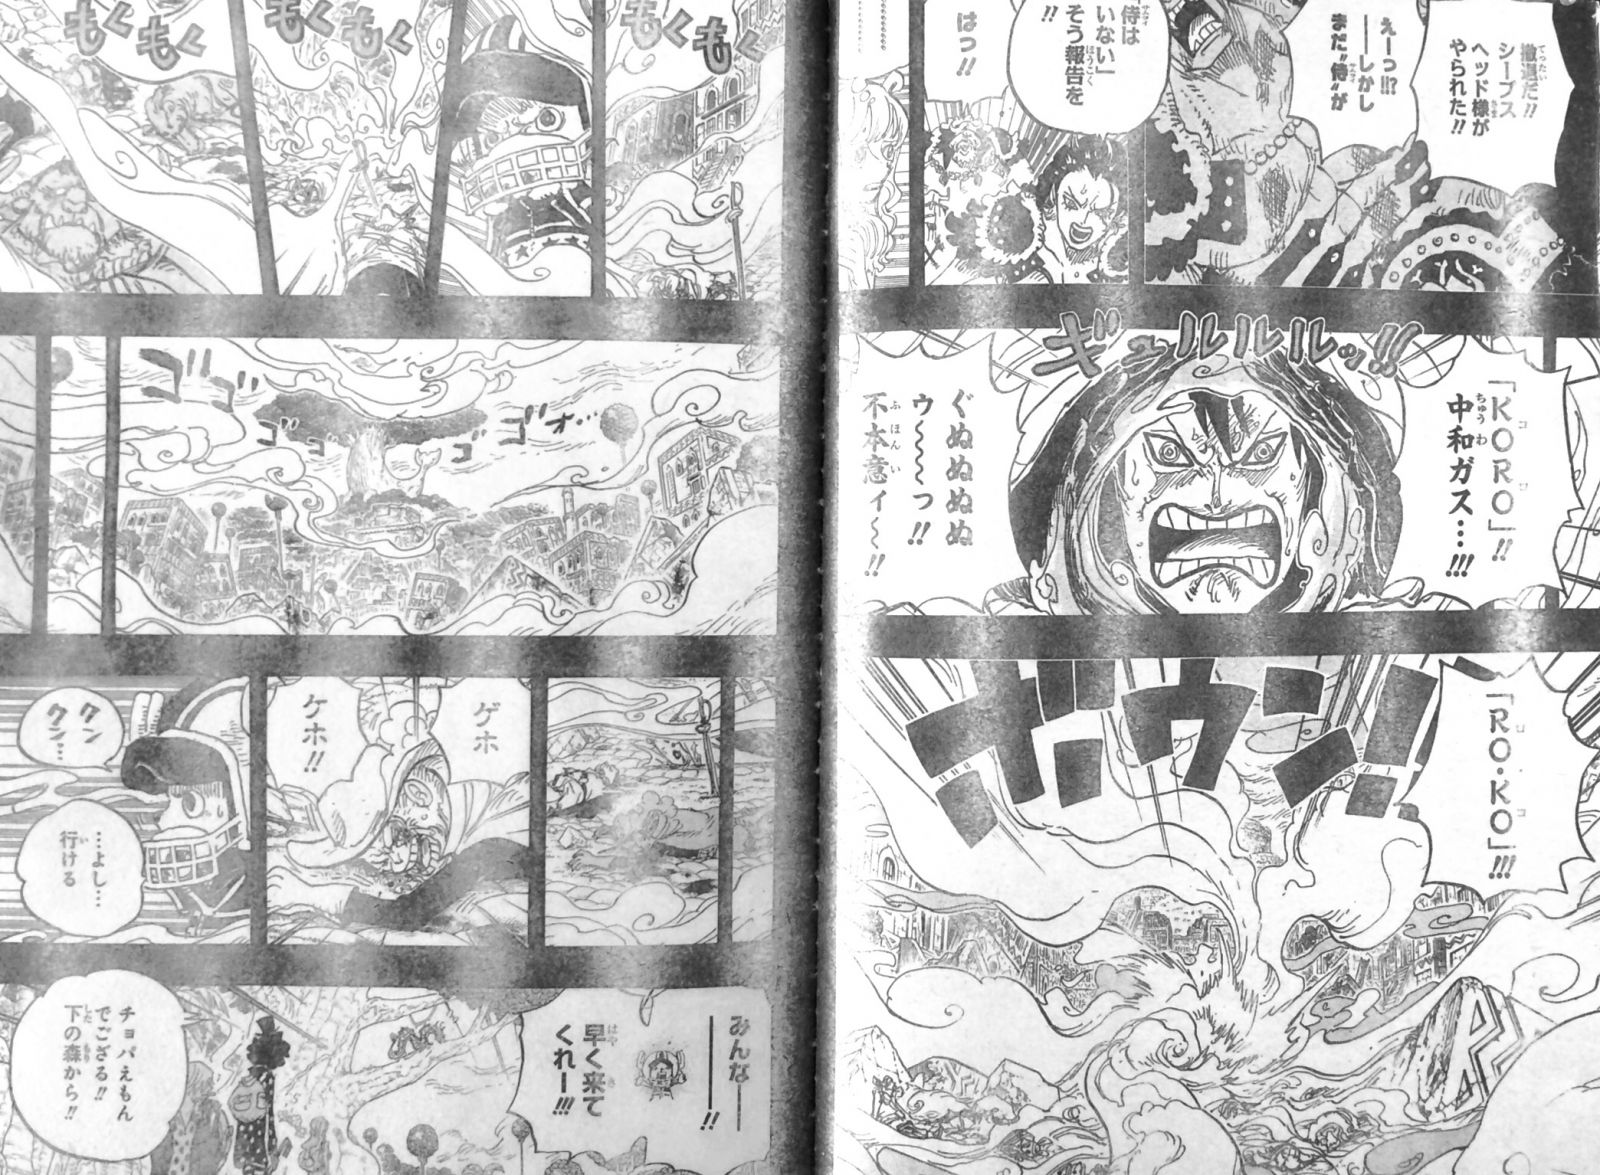 第811話 Roko サンジもう戻らない ２日前四皇ビッグマム海賊団ゾウ出身ペコムズら現る One Piece ワンピース 道場 アニメ 漫画 まにあ道 趣味と遊びを極めるサイト